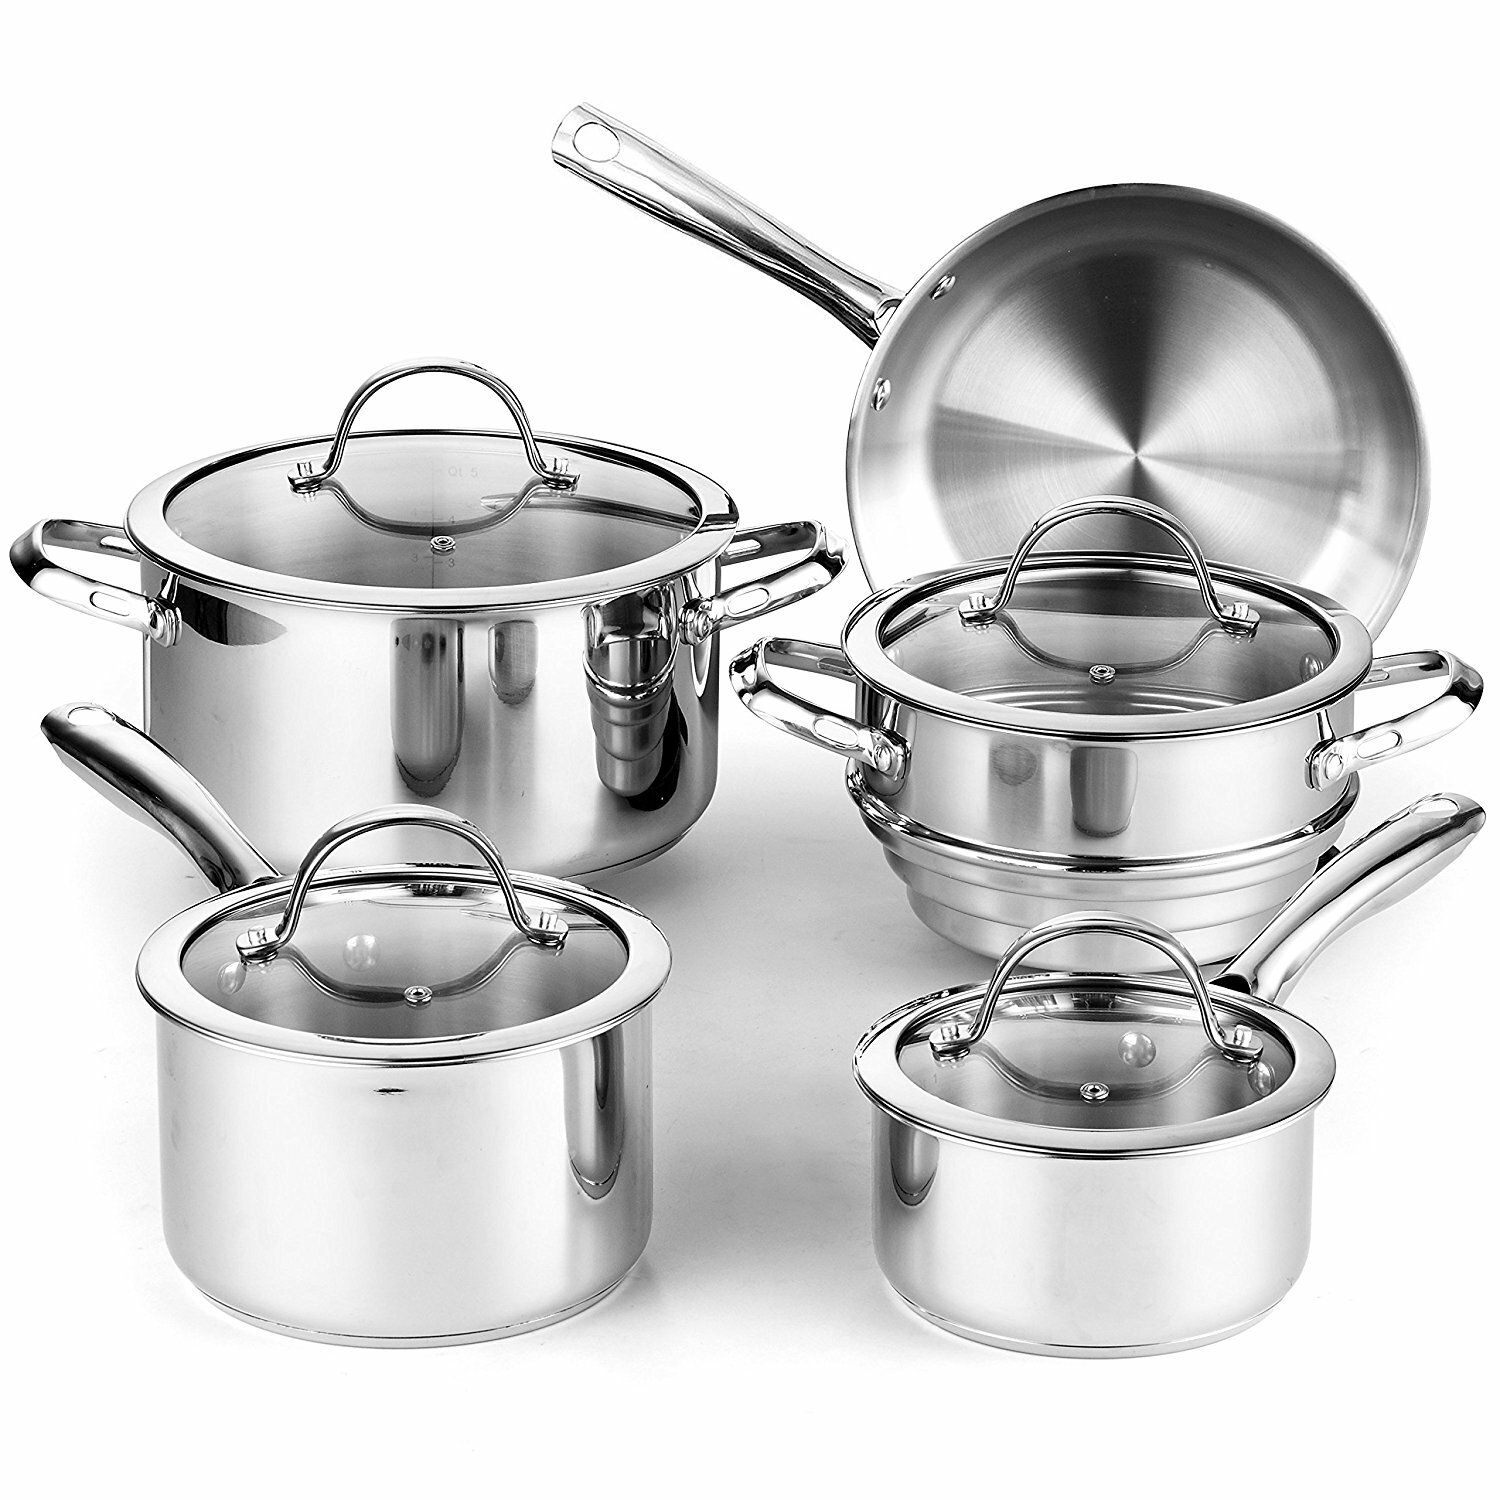 https://assets.wfcdn.com/im/98668841/compr-r85/3842/38427135/classic-9-piece-stainless-steel-cookware-set.jpg